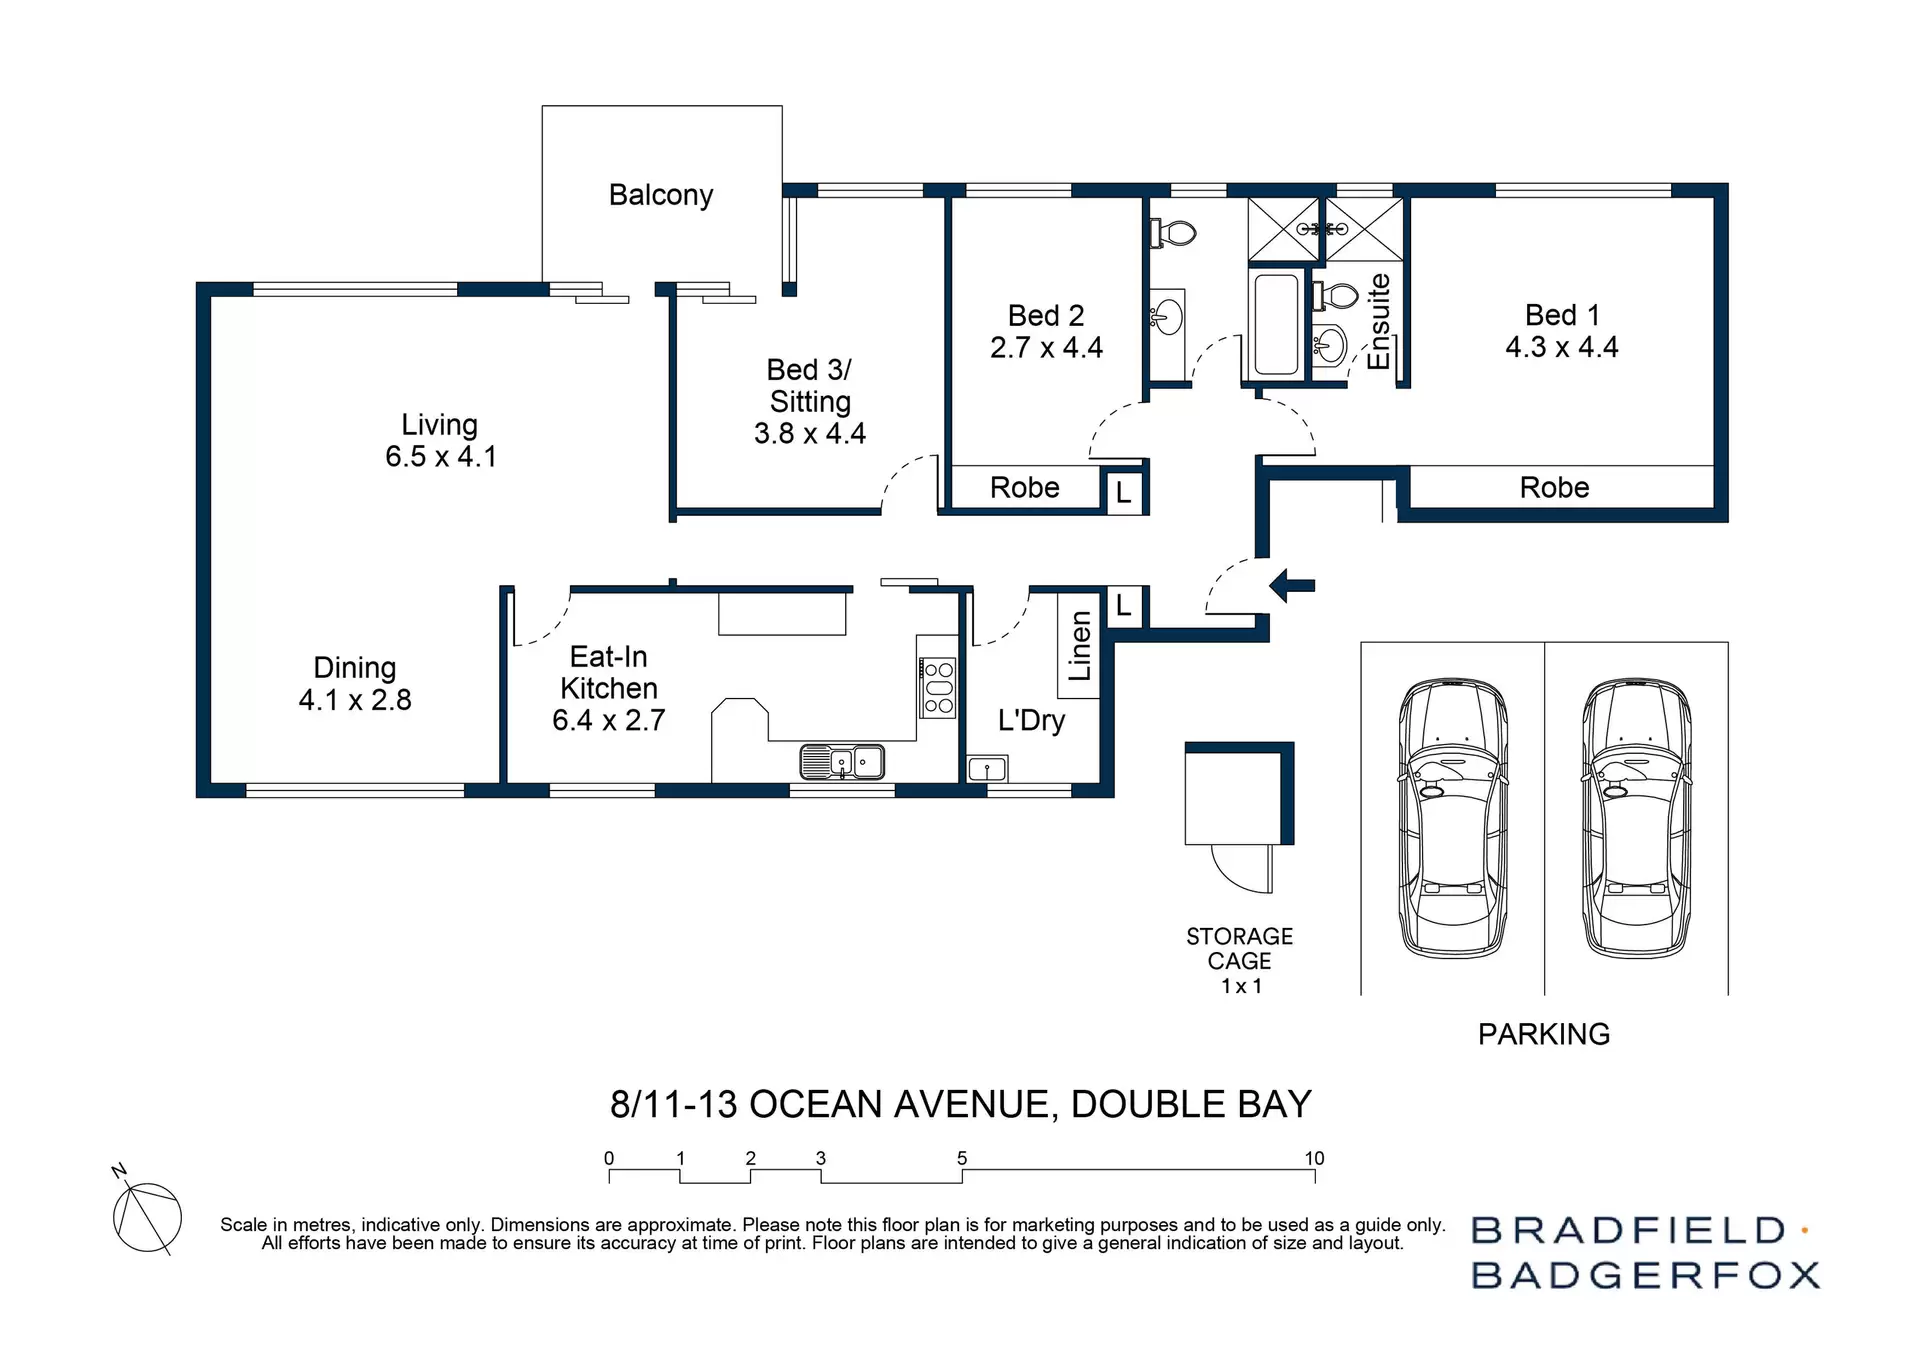 8/11-13 Ocean Avenue, Double Bay Auction by Bradfield Badgerfox - image 1